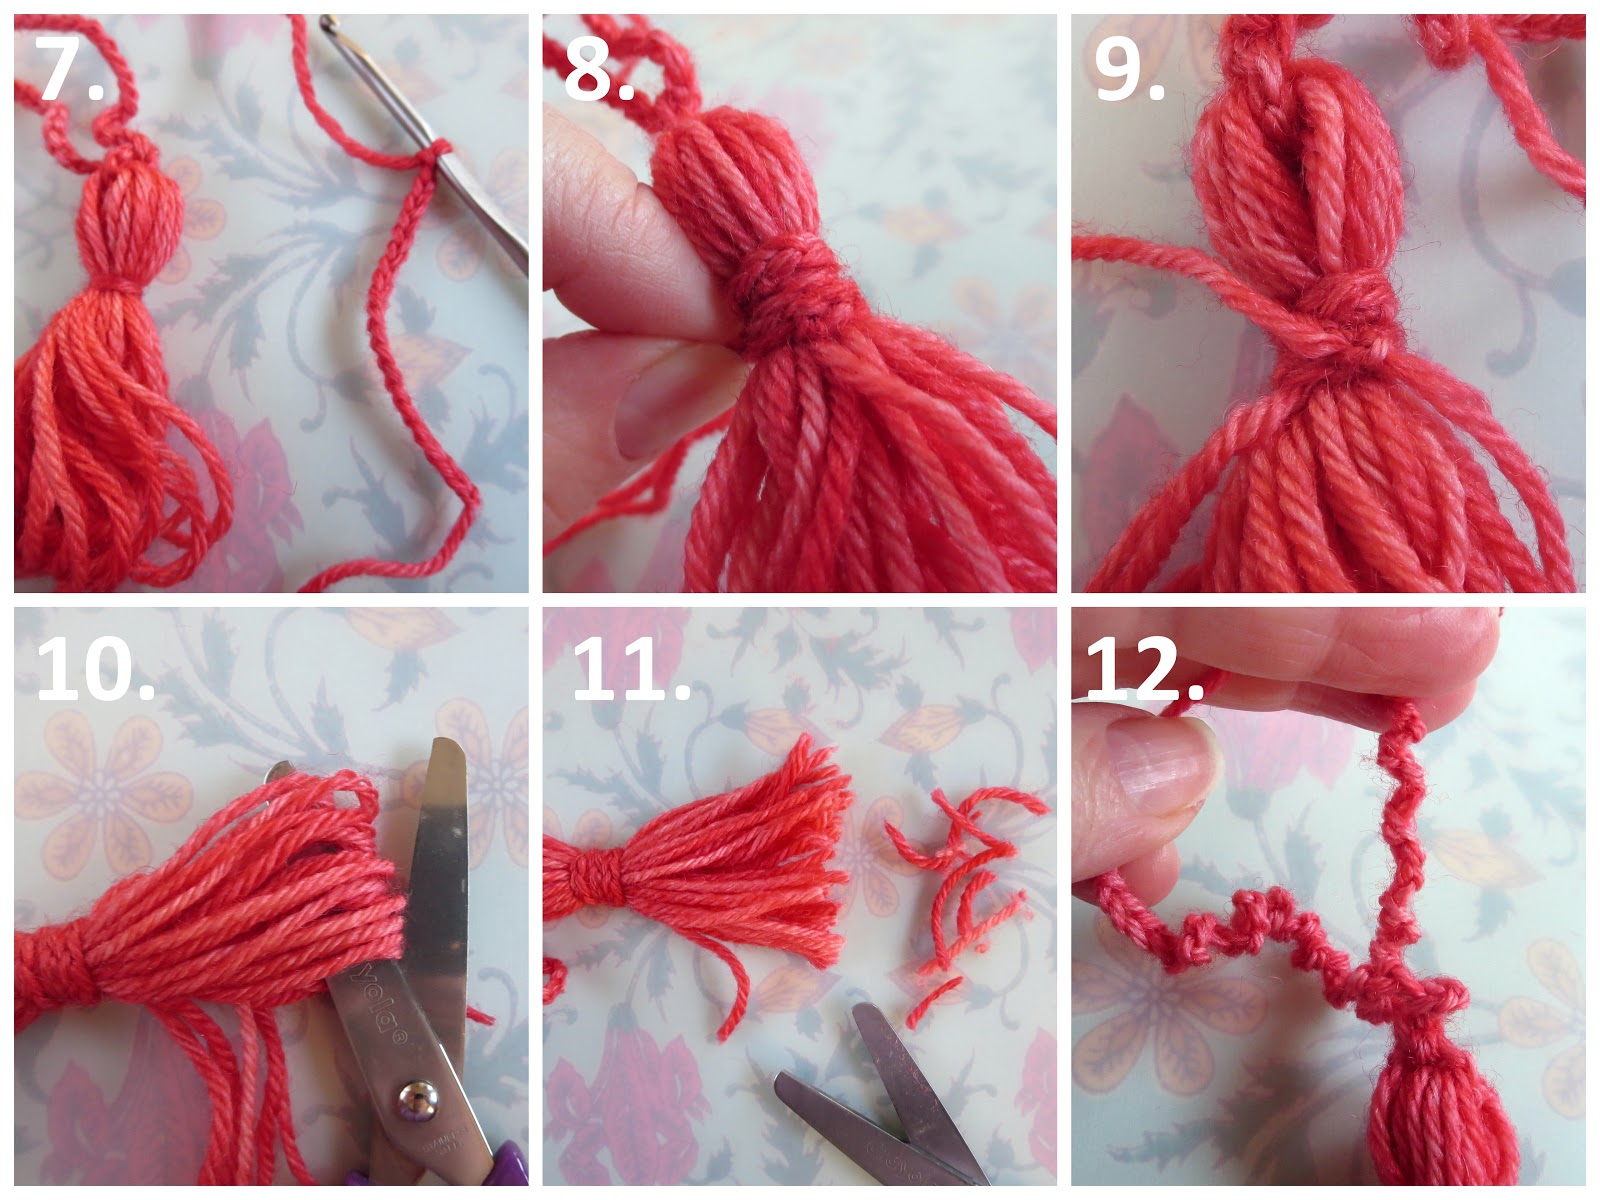 DIY: Chain Loop Yarn Pom Free Tutorial - A Crocheted Simplicity